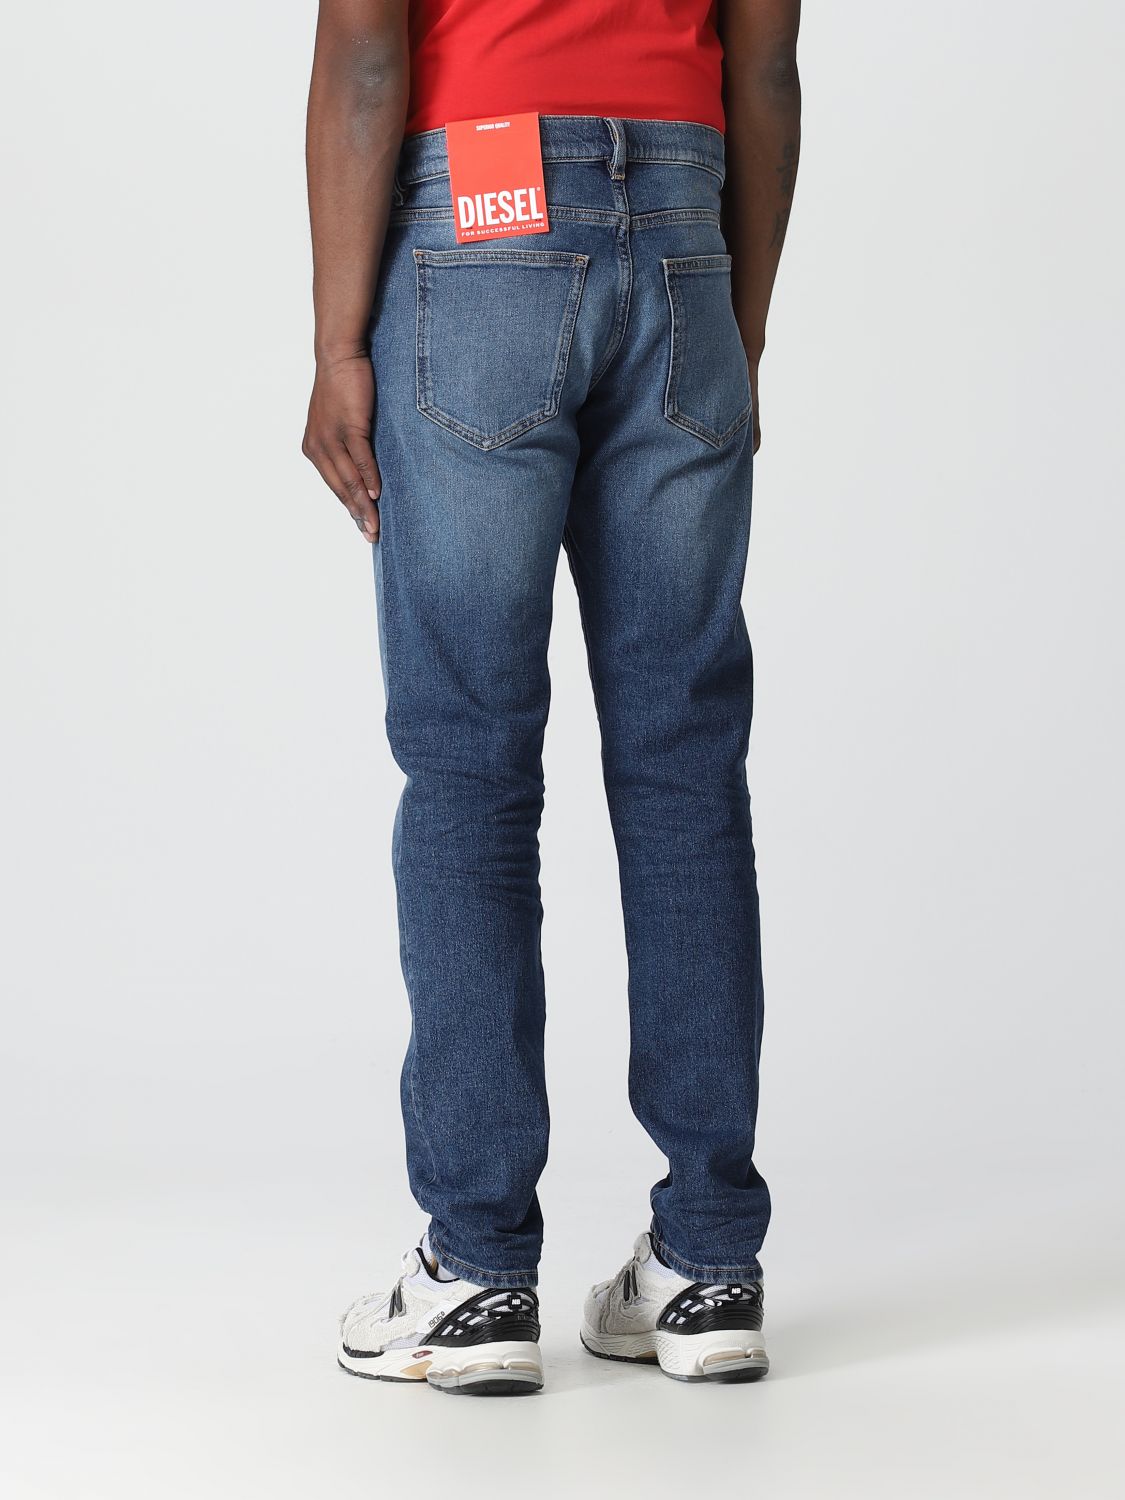 DIESEL: man - Navy | Diesel jeans online on GIGLIO.COM